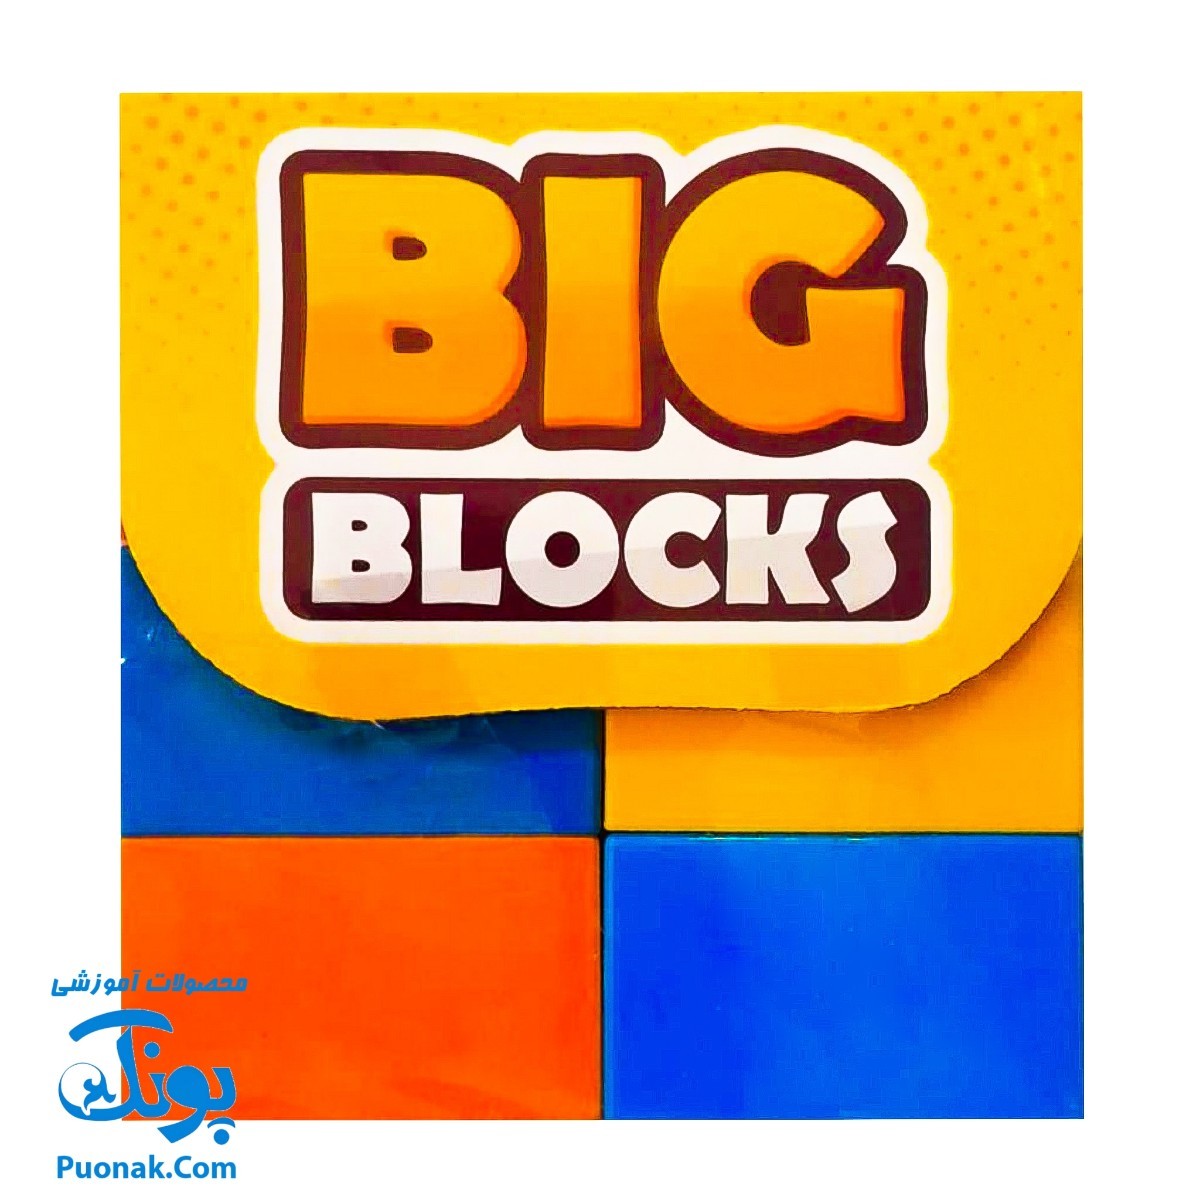 بازی خانه سازی بلوک های بزرگ ۱۷ قطعه هاچینو